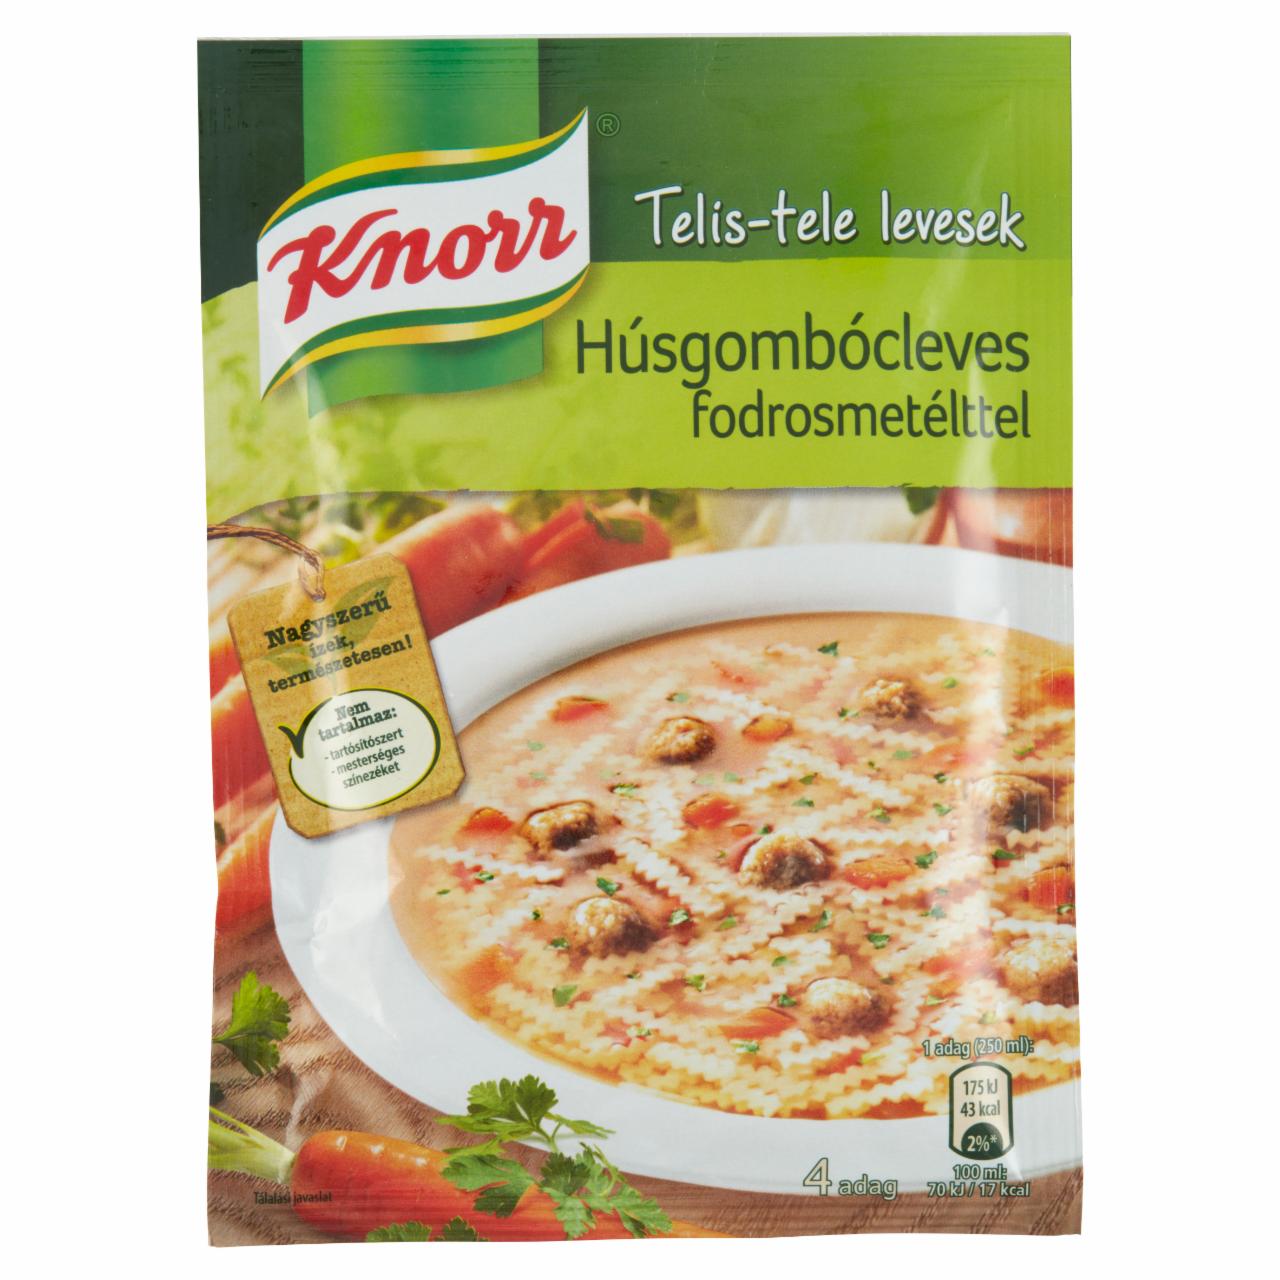 Képek - Knorr húsgombócleves fodrosmetélttel 50 g